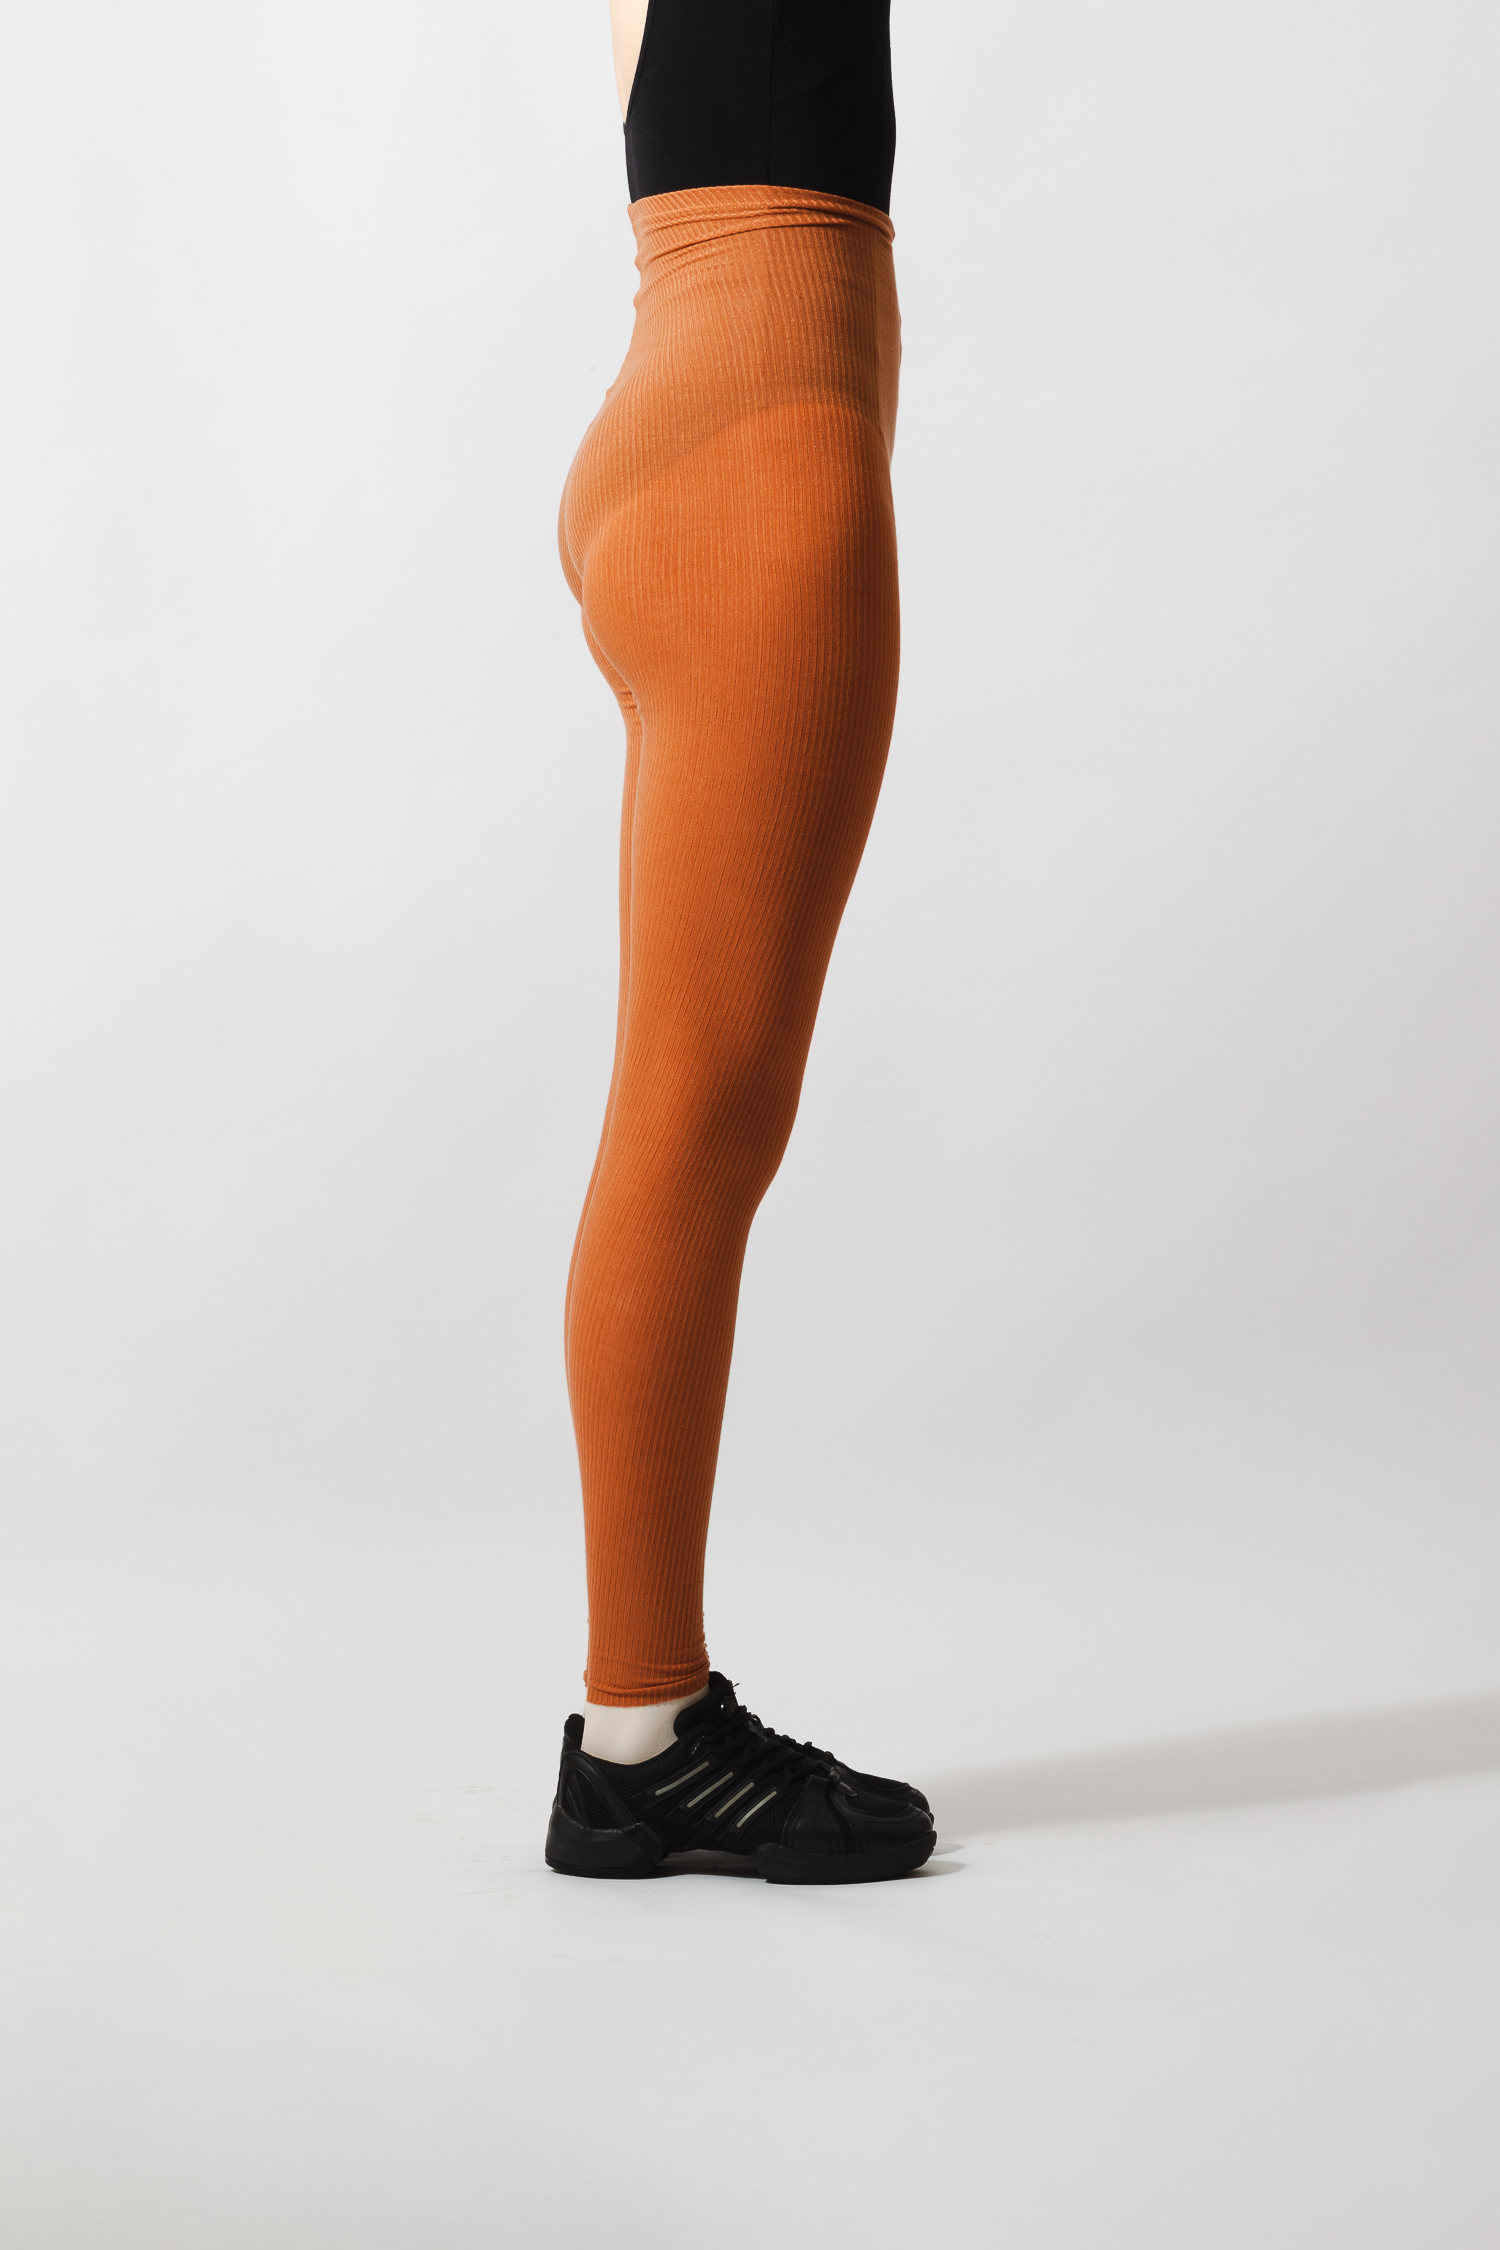 CALIA Women's LustraLux 7/8 Legging, Small, Sunrise Orange